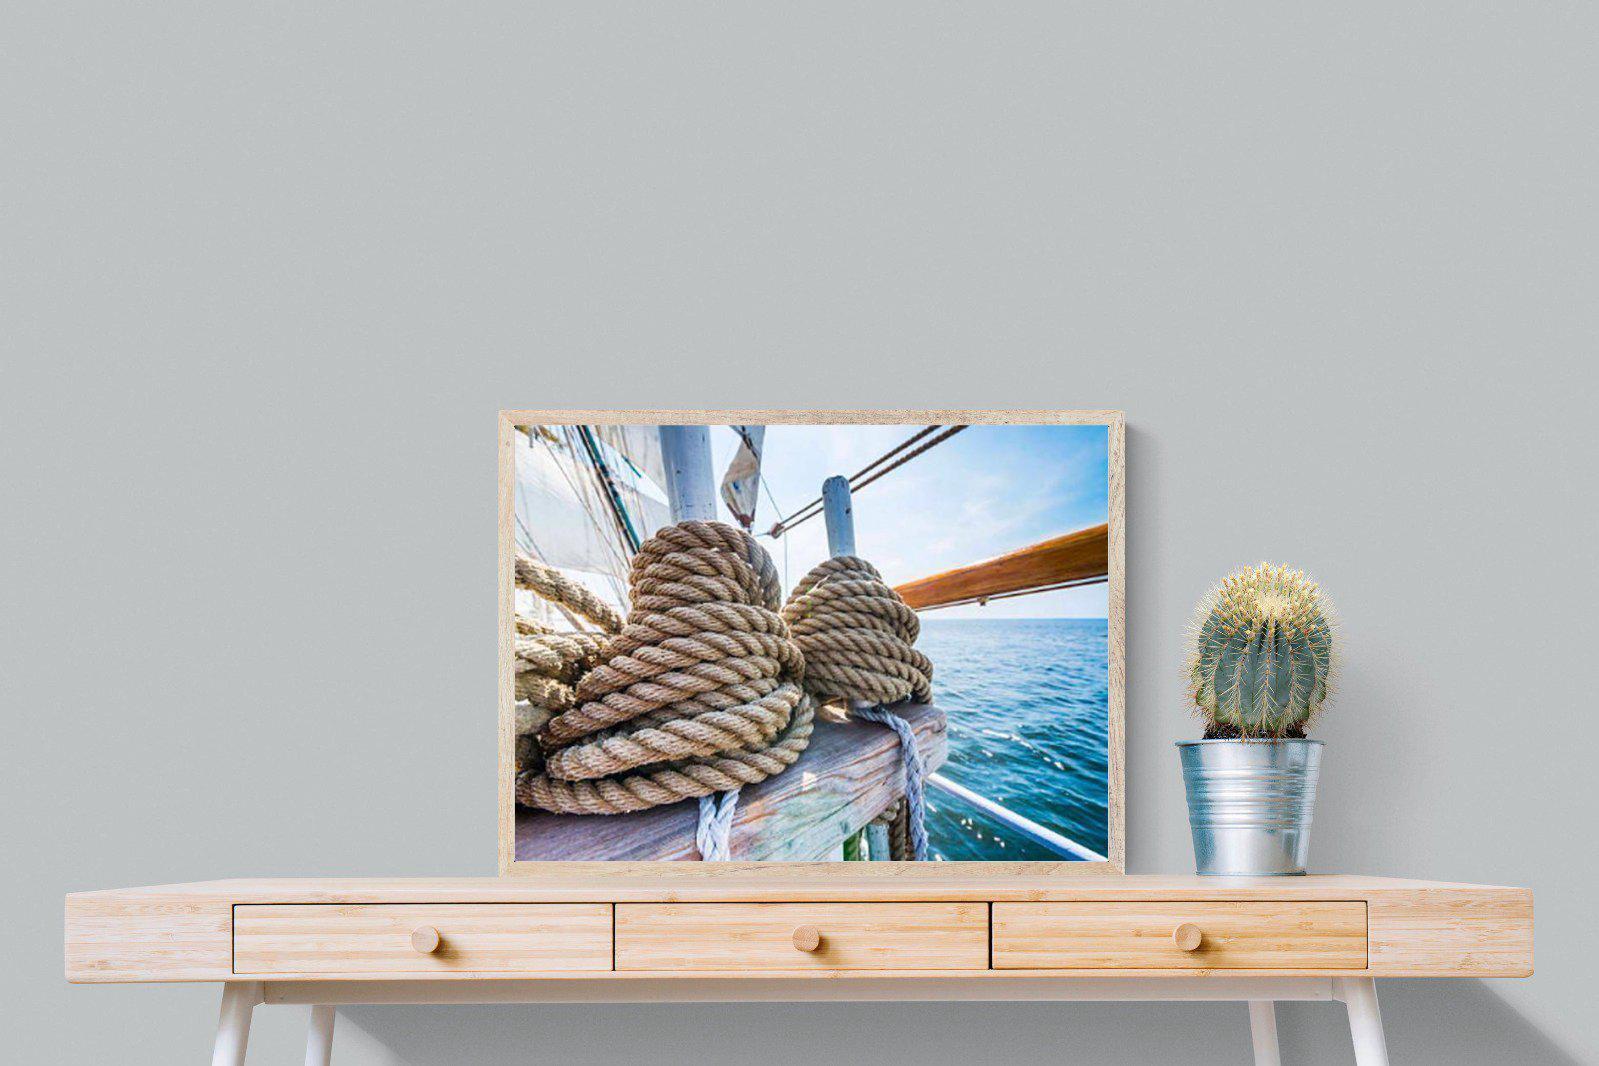 Set Sail-Wall_Art-80 x 60cm-Mounted Canvas-Wood-Pixalot